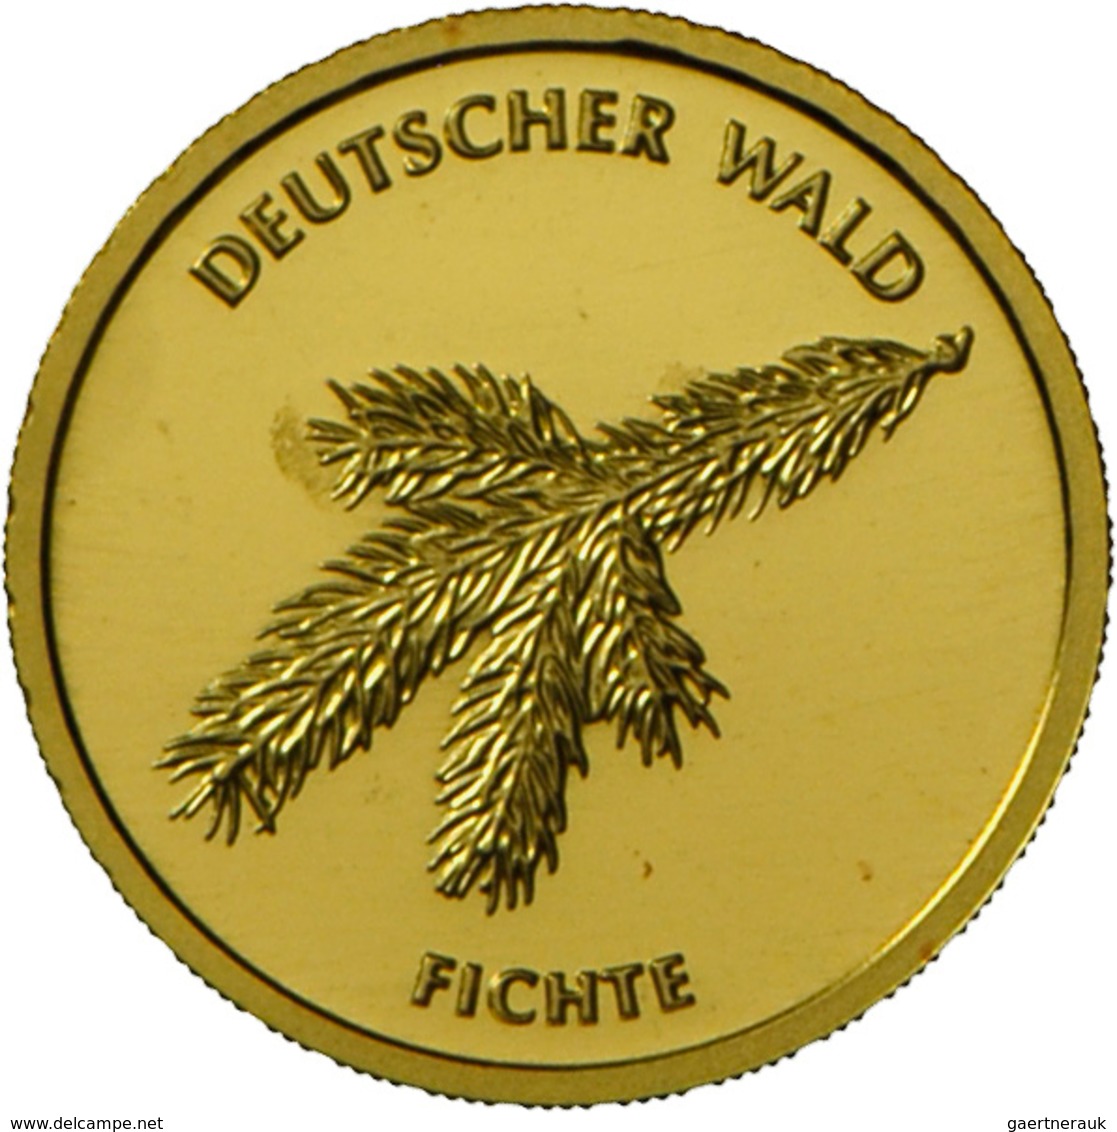 Deutschland - Anlagegold: 2 X 20 Euro 2012 Fichte (F,G), Jaeger 572. Jede Münze Wiegt 3,89 G 999/100 - Germania